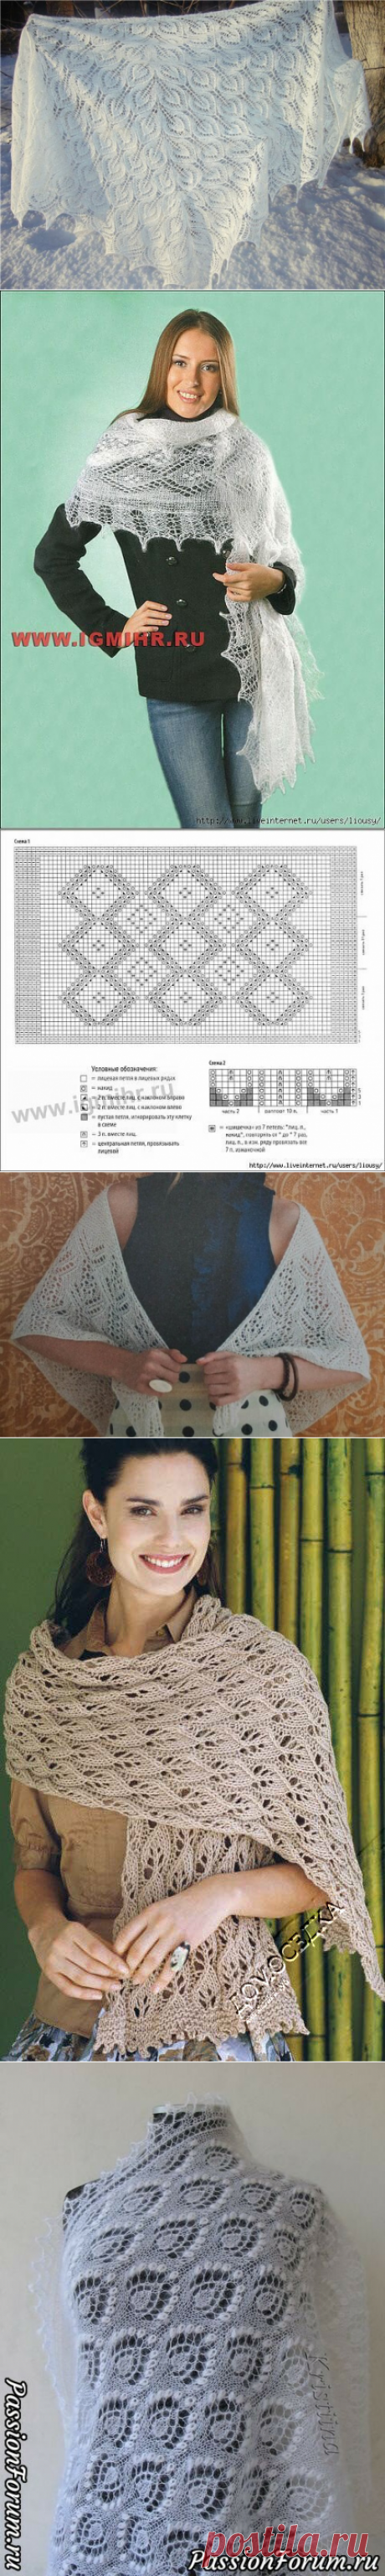 Узоры спицами для шалей, палантинов и бактусов: делюсь подборкой со схемами | Факультет рукоделия | Яндекс Дзен